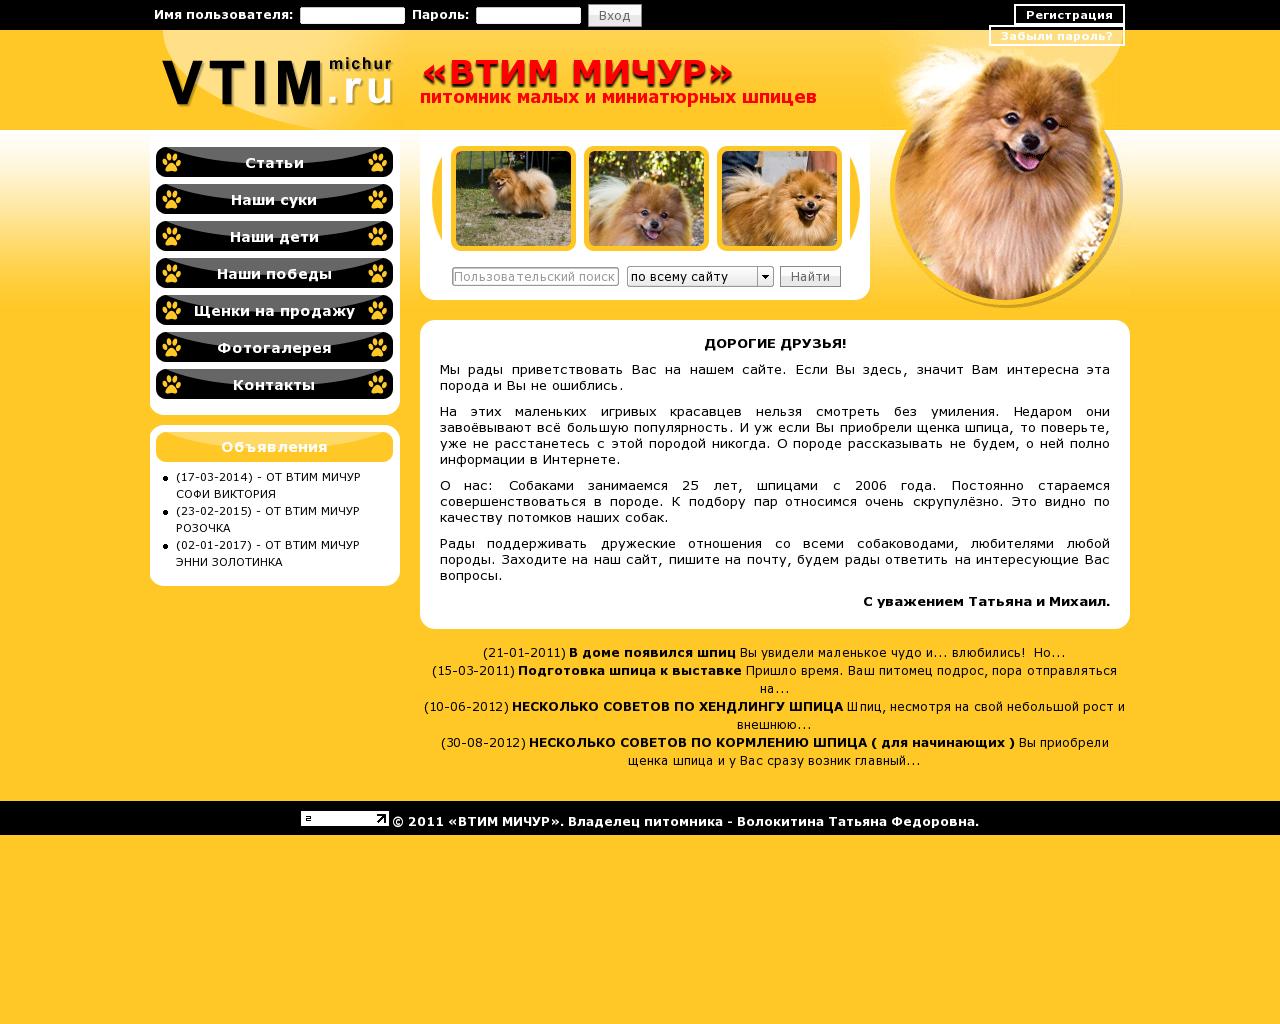 Изображение сайта vtimmichur.ru в разрешении 1280x1024